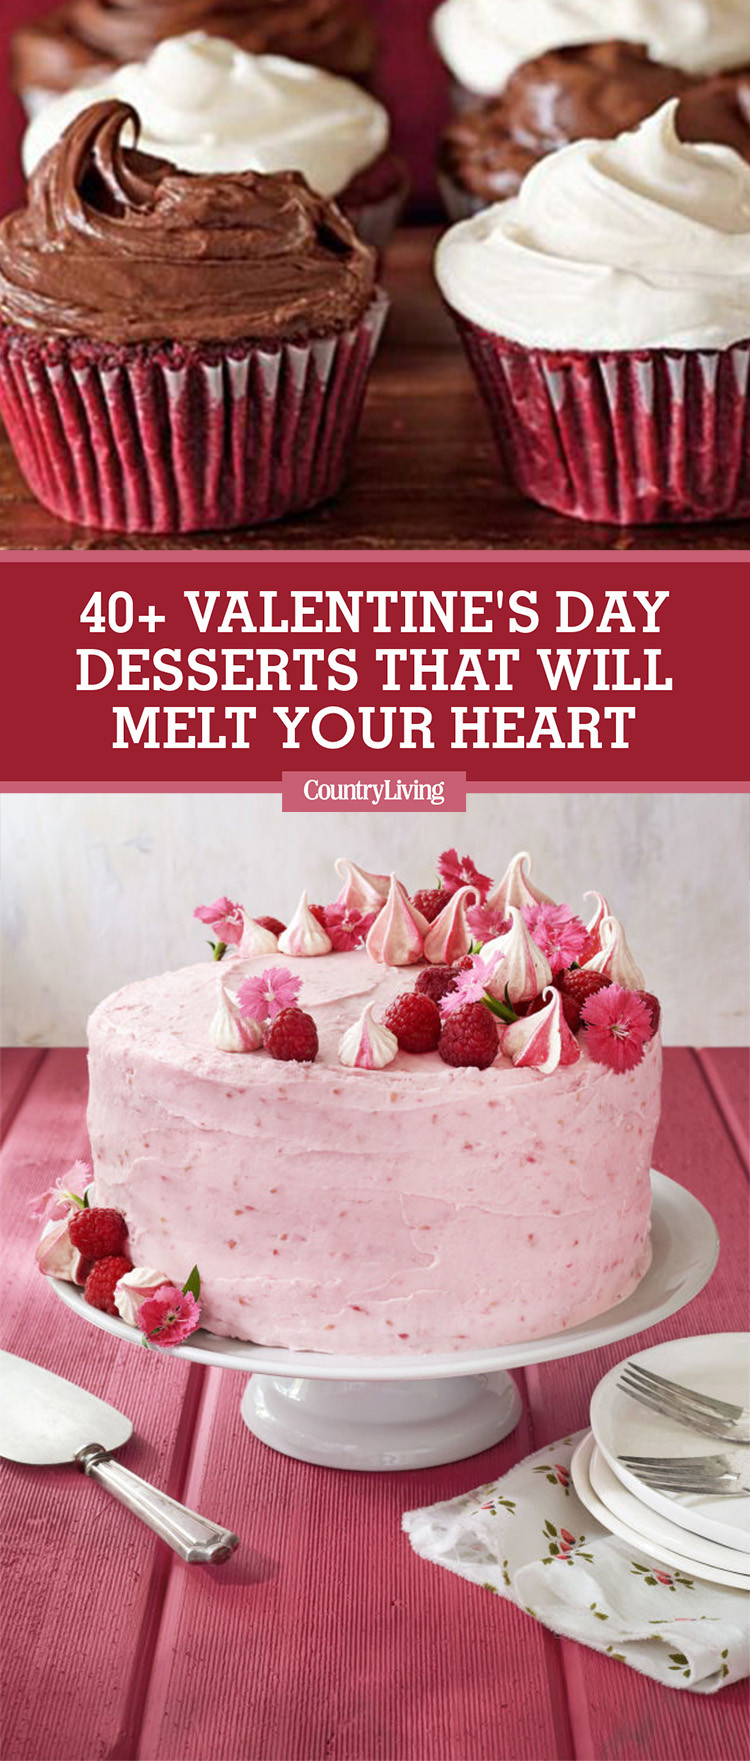 Valentine Day Desserts Pinterest
 42 Easy Valentine’s Day Desserts Best Recipes for